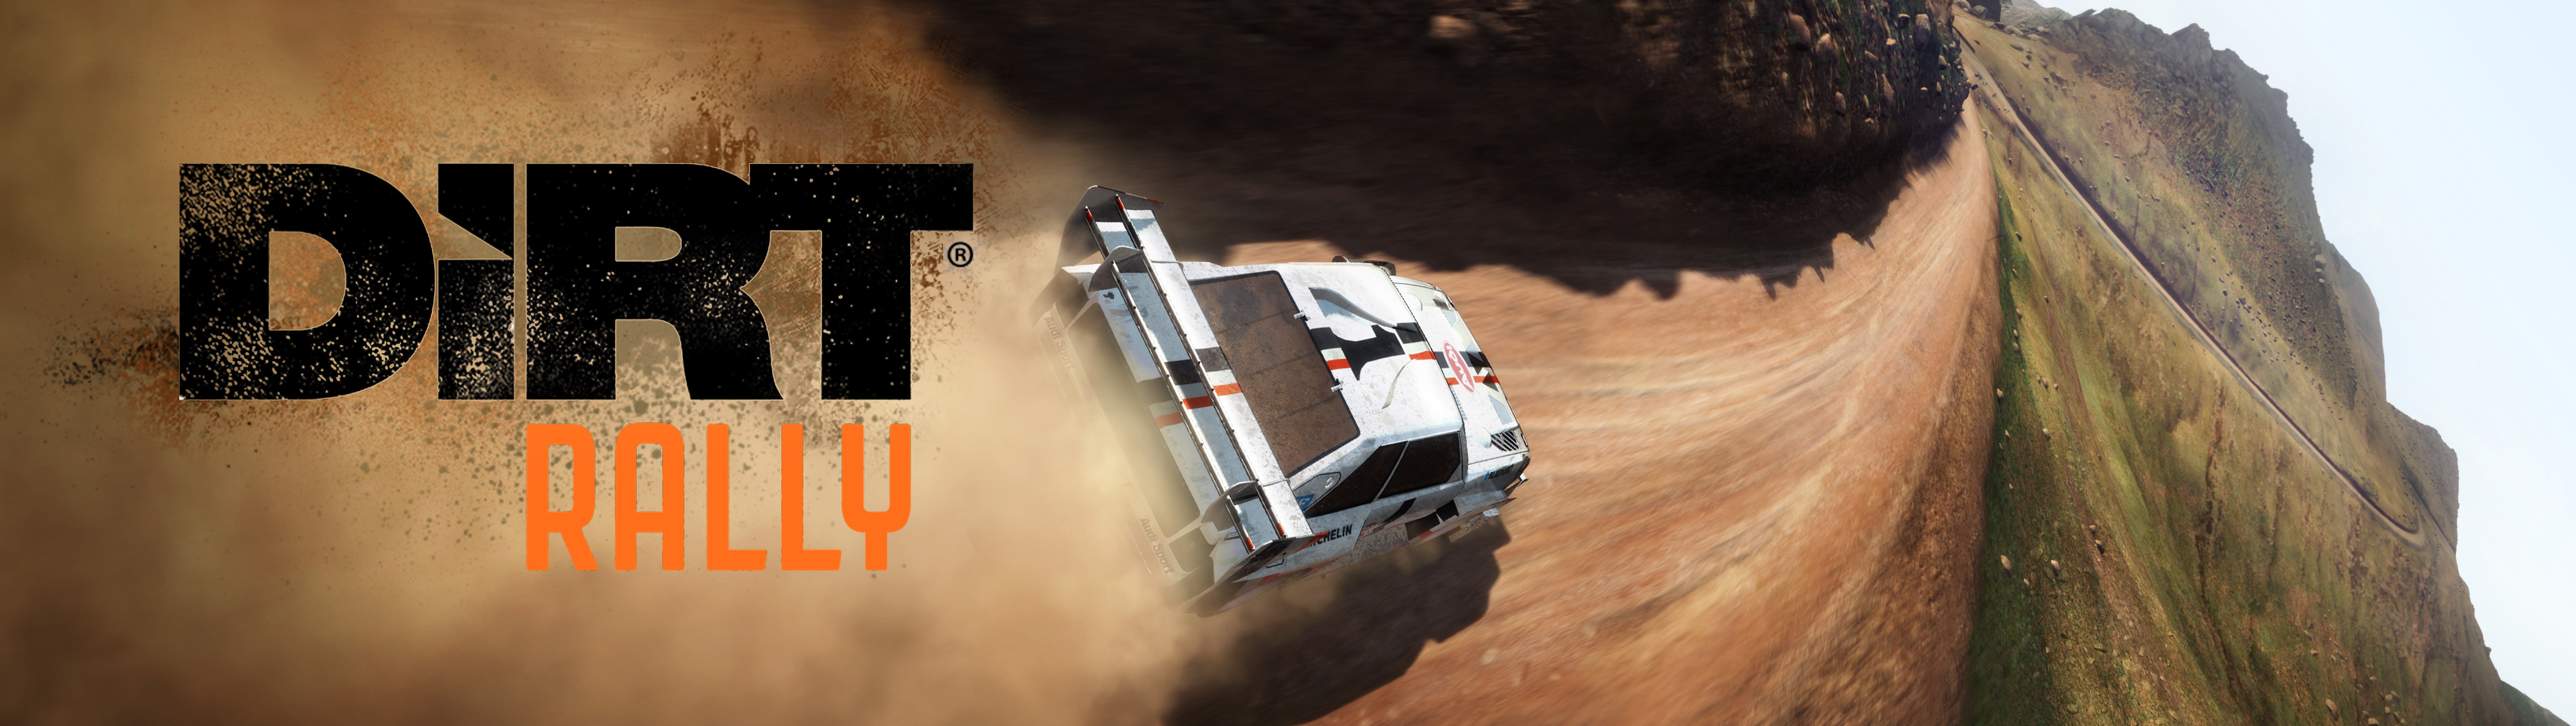 Dirt Rally Dirt 4550x1283